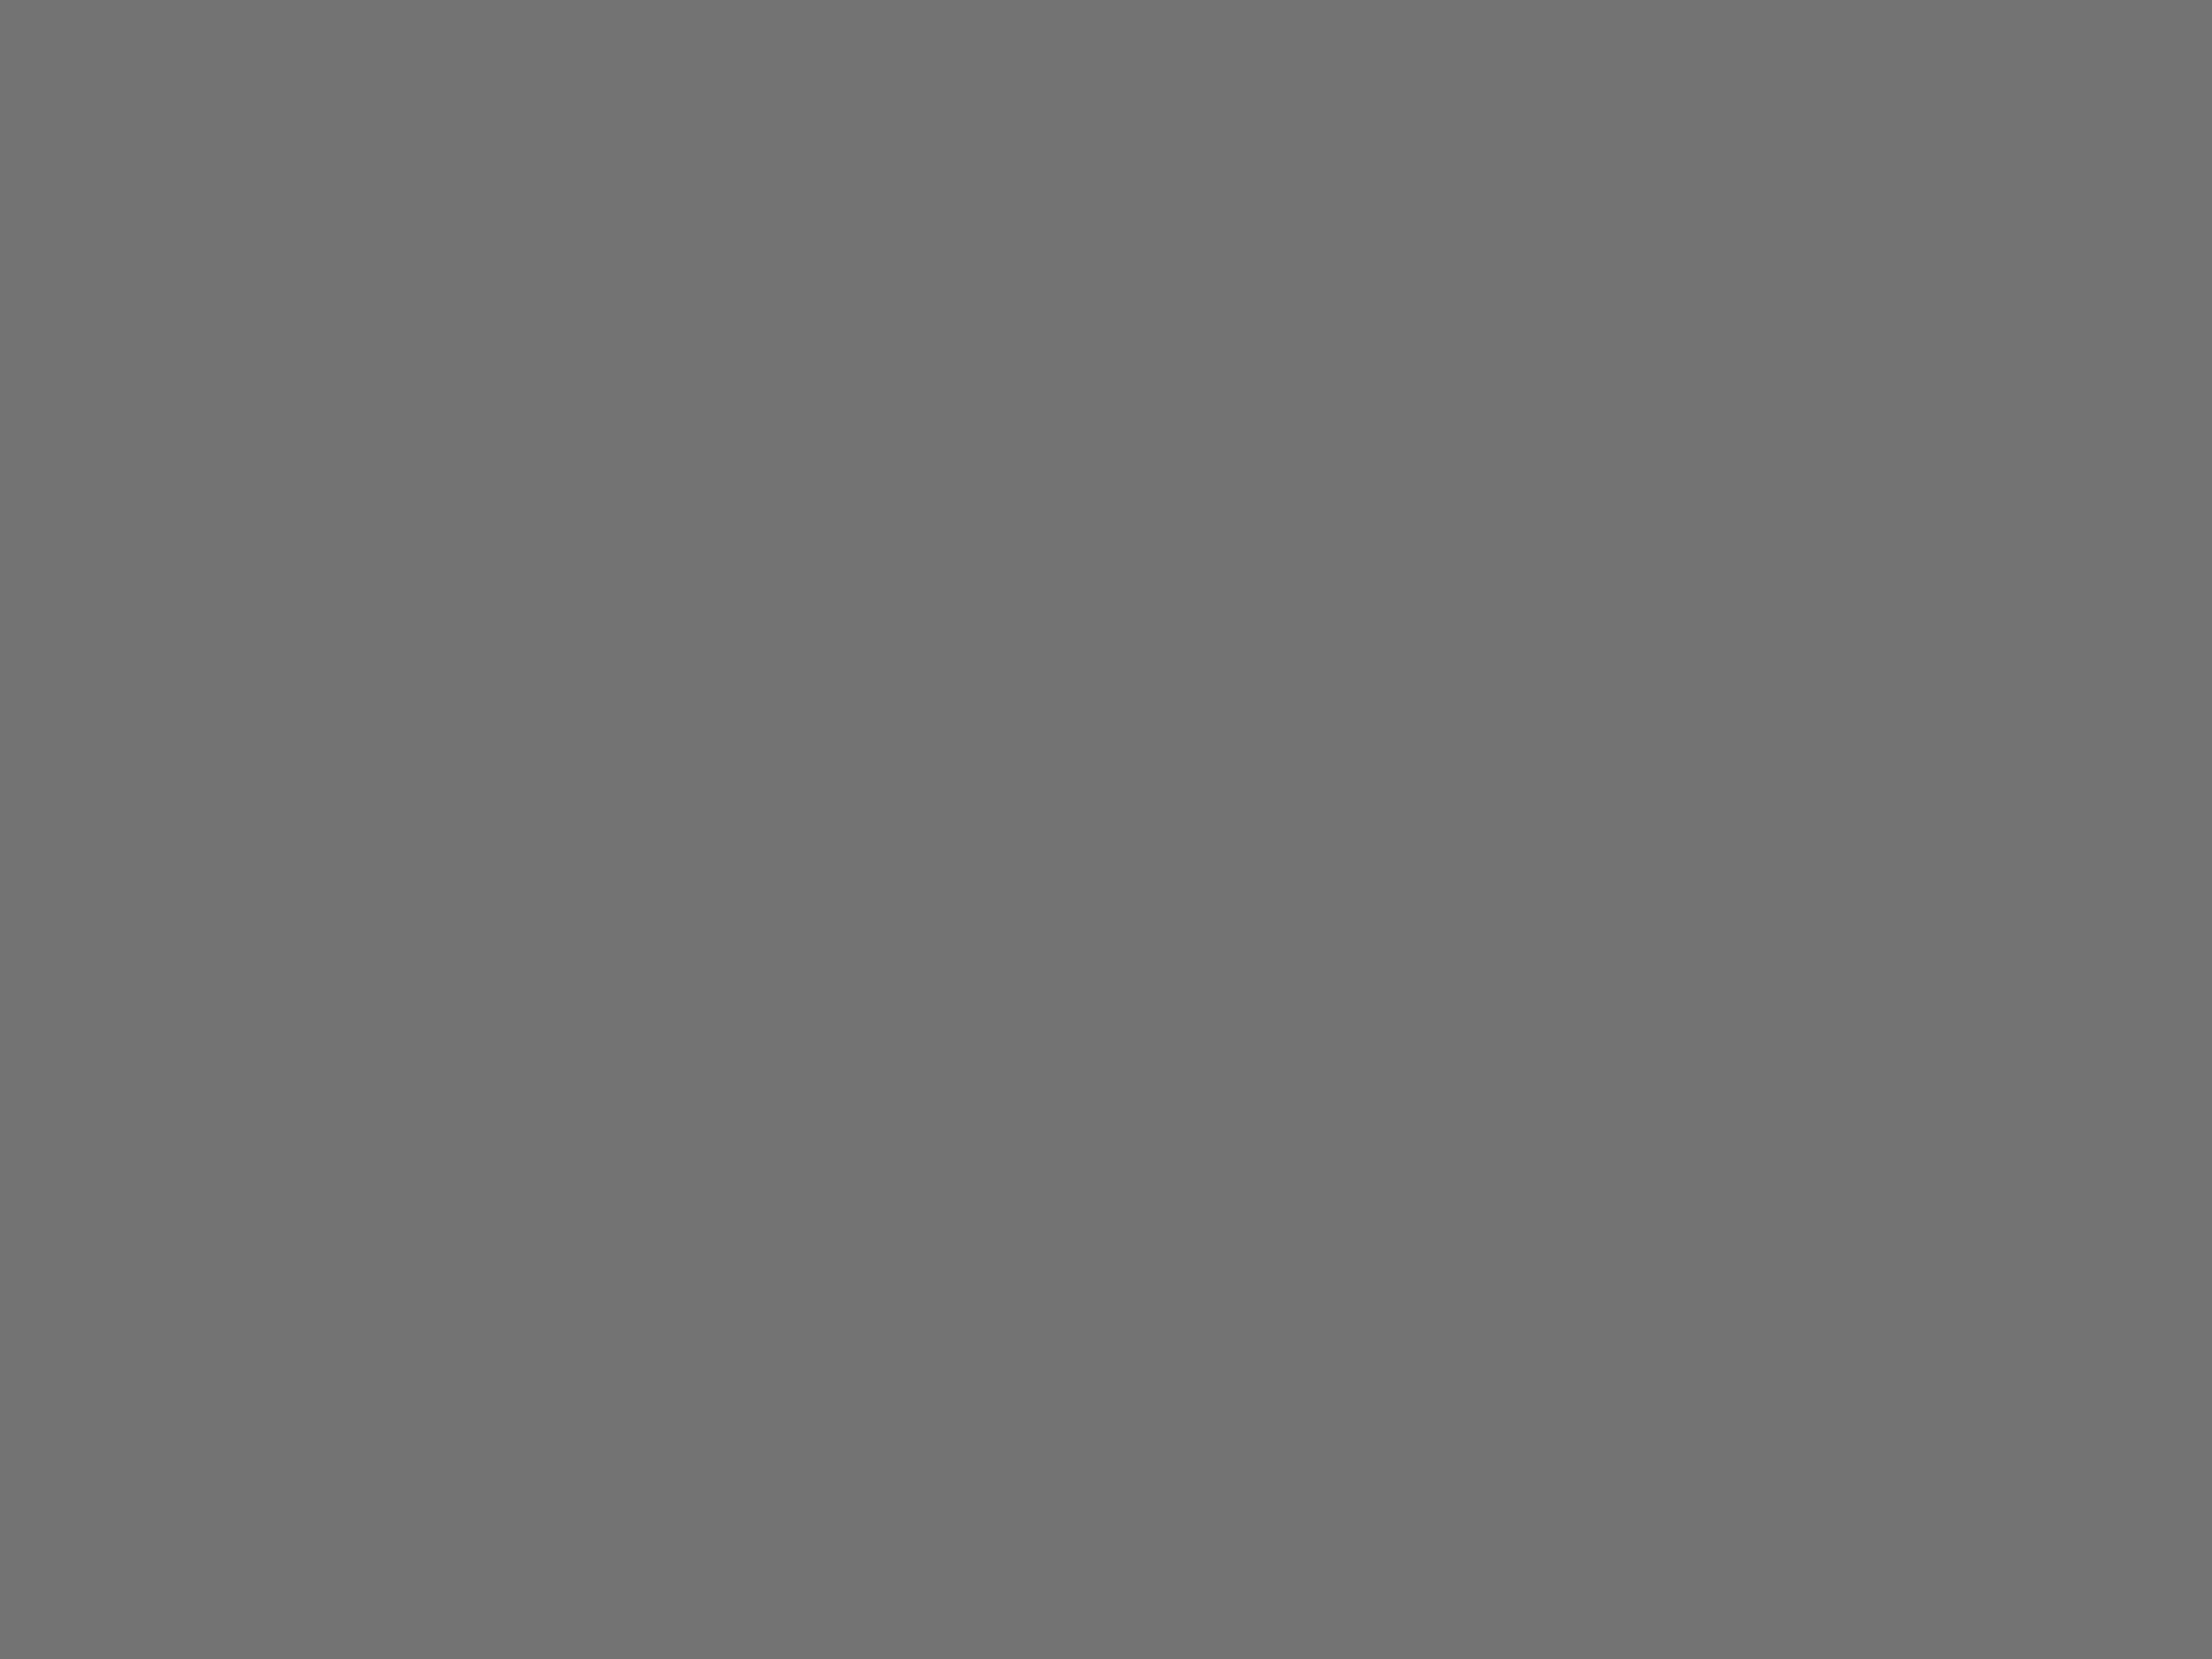 Автор сценария фильма «Время желаний» Анатолий Гребнев (слева), актриса Вера Алентова и актер Анатолий Папанов на съемочной площадке. Фотография: Николай Малышев / ТАСС